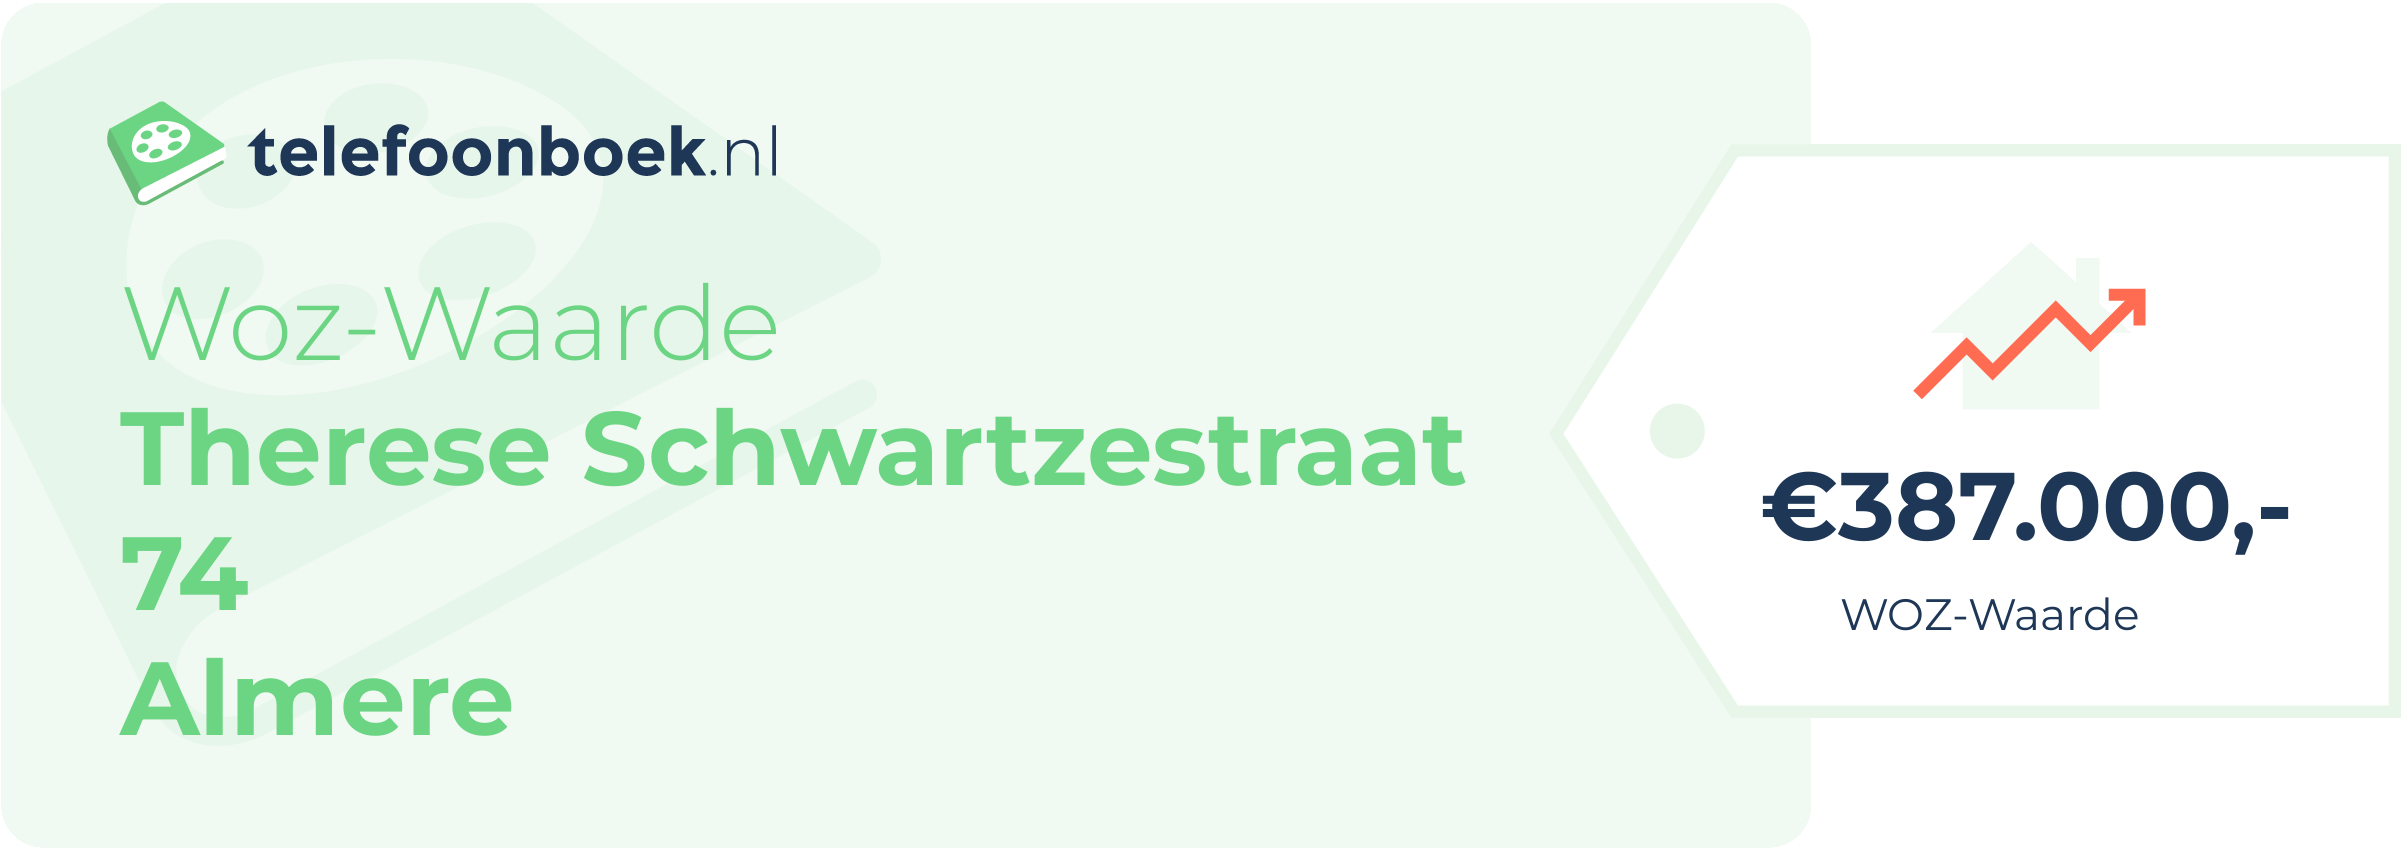 WOZ-waarde Therese Schwartzestraat 74 Almere